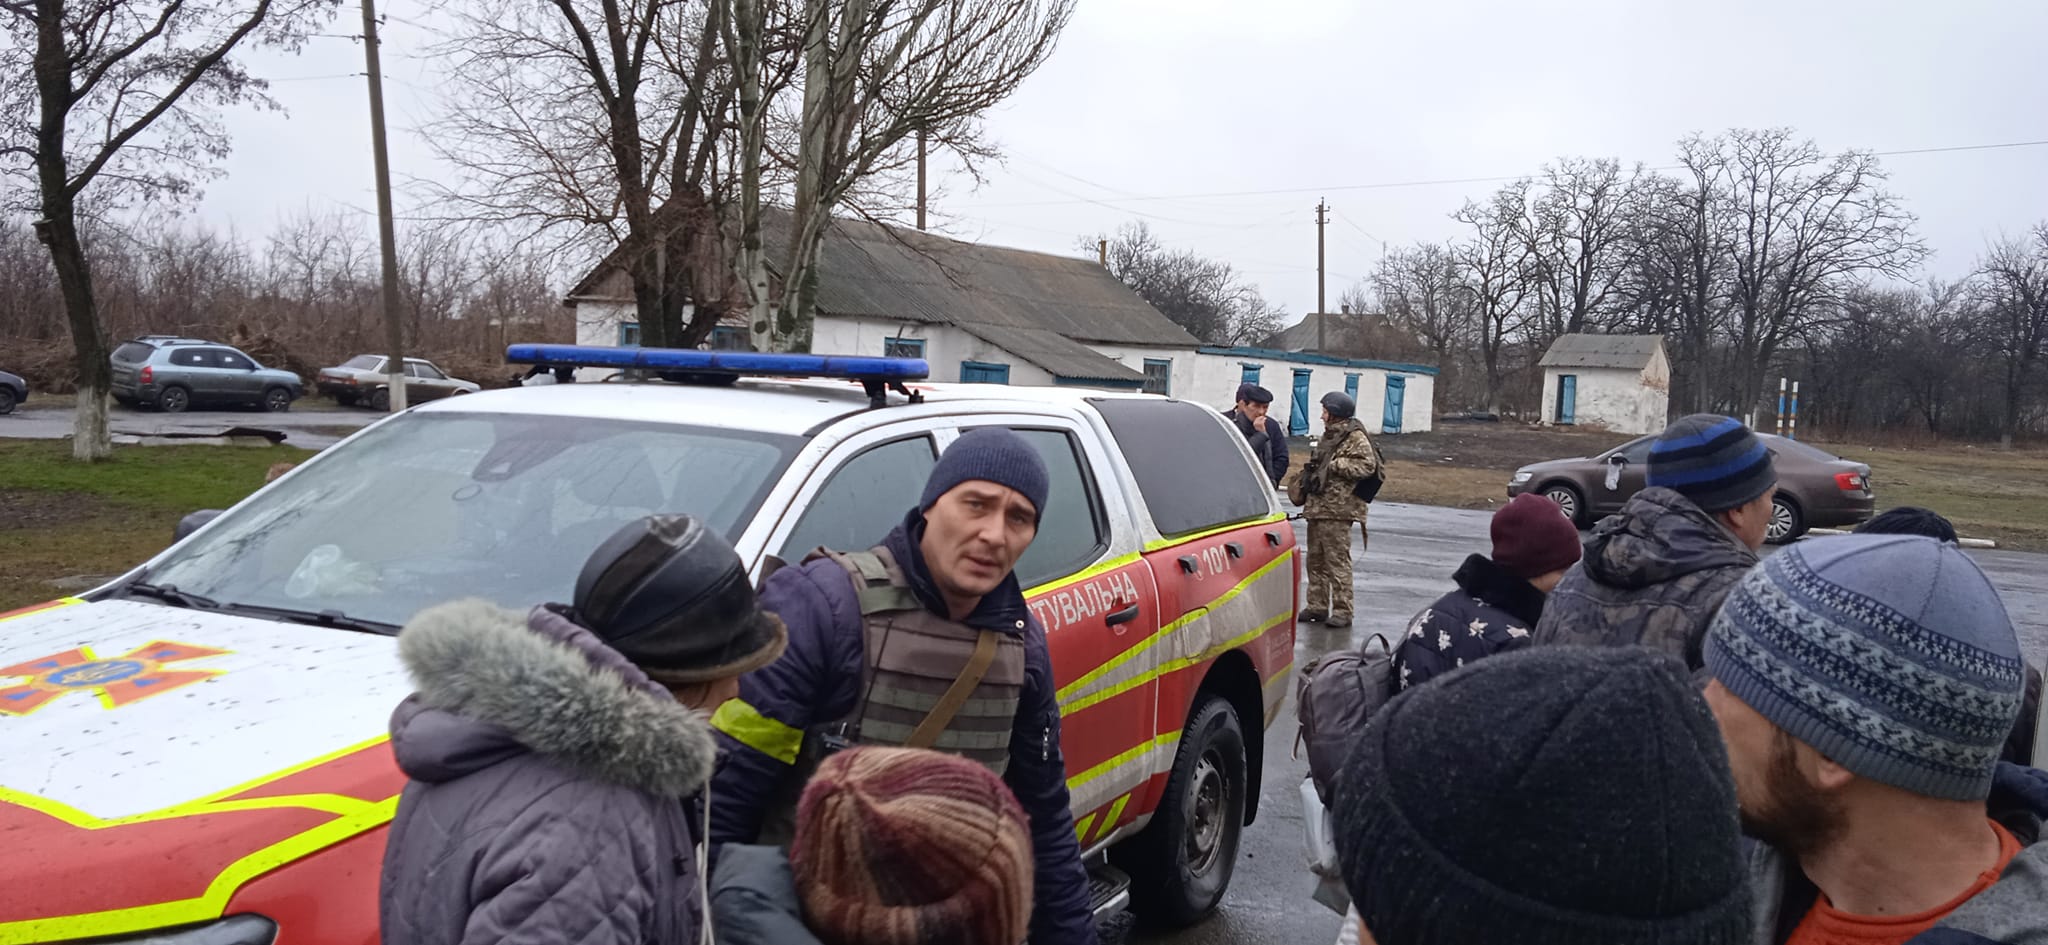 Ще близько 100 людей вдалося евакуювати з Волновахи, де не вщухають обстріли з артилерії (імена) 8